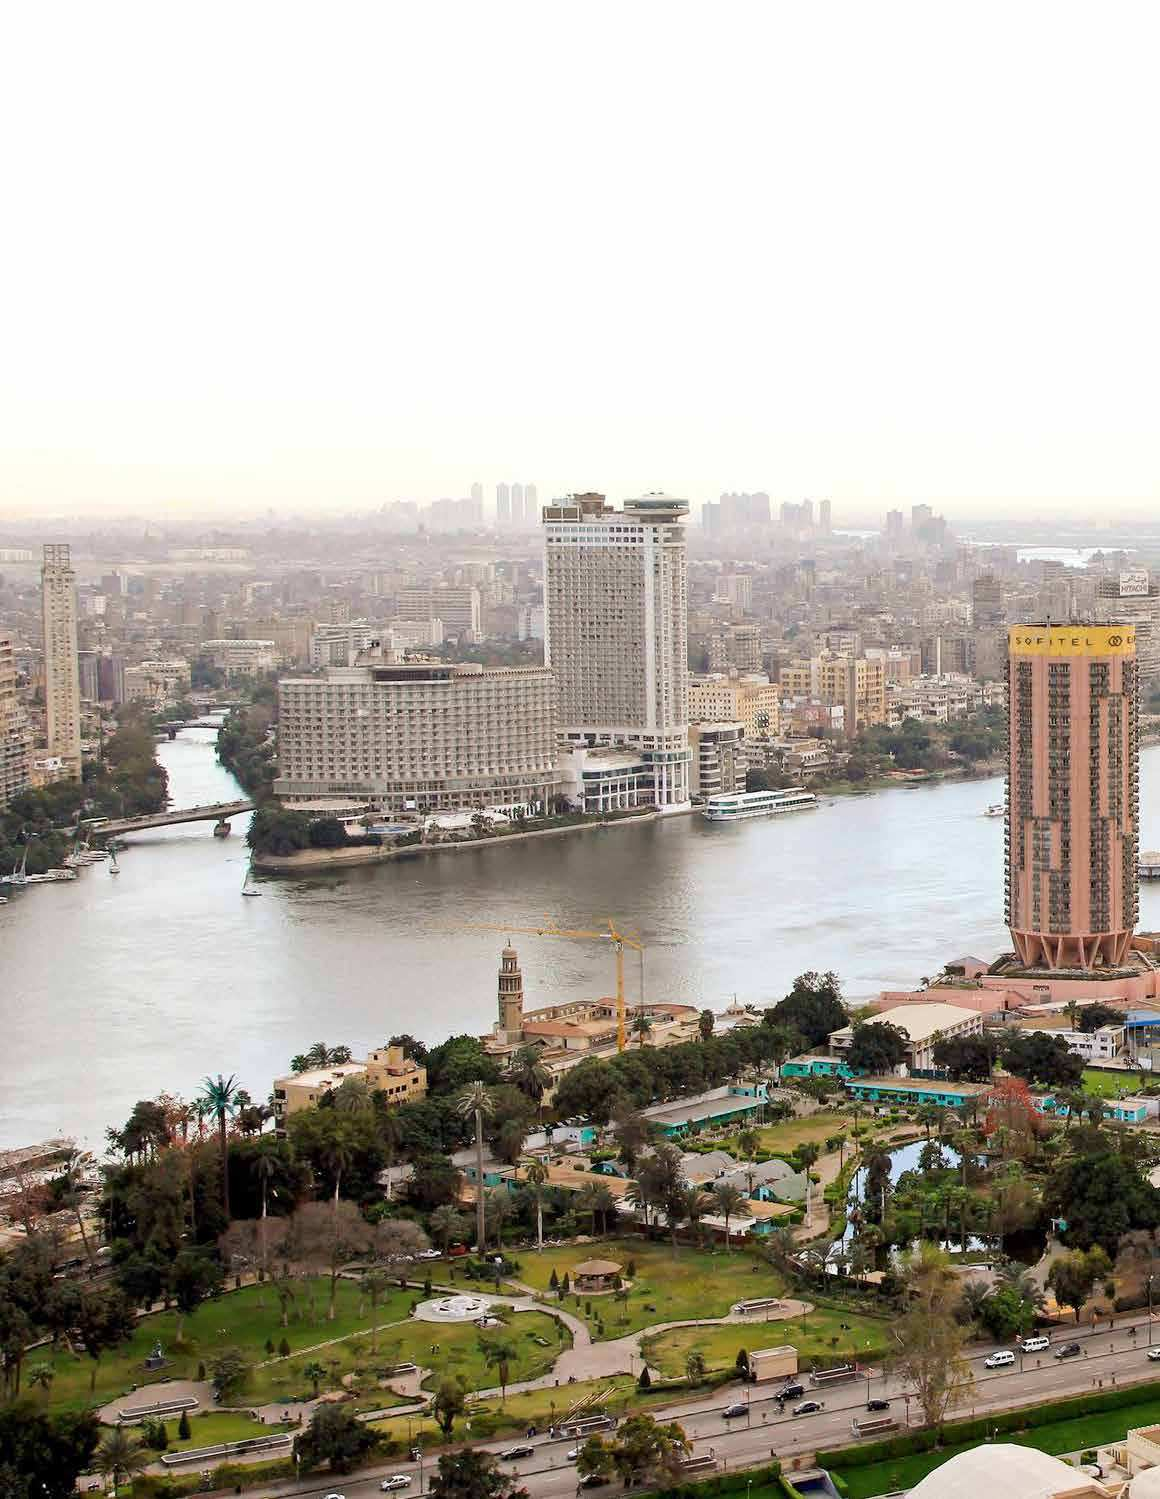 26 MISIR ULUSAL VİZYONU KAPSAMINDA KAHİRE 2050 VİZYONU Yapısal Çerçeve: Nüfus: 19,5 milyon (metropol alan nüfusu) 17 milyon (kent nüfusu) Özellik:Kültür,Tarih, Finans Kahire, Mısır ın başkenti, aynı